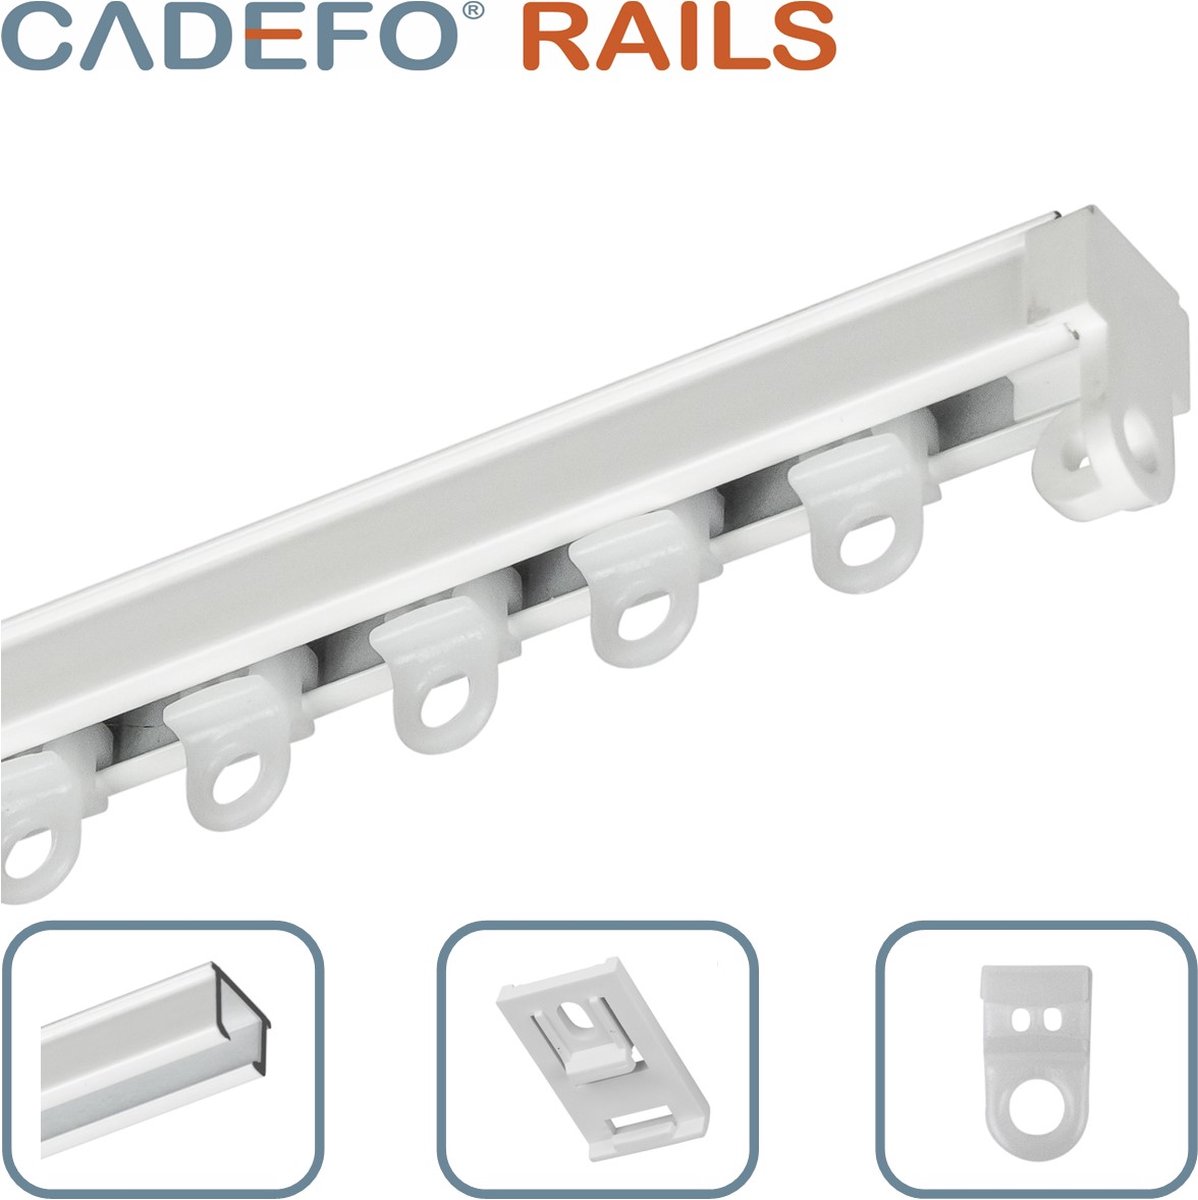 CADEFO RAILS (251 - 300 cm) Gordijnrails - Compleet op maat! - UIT 1 STUK - Leverbaar tot 6 meter - Plafondbevestiging - Lengte 273 cm